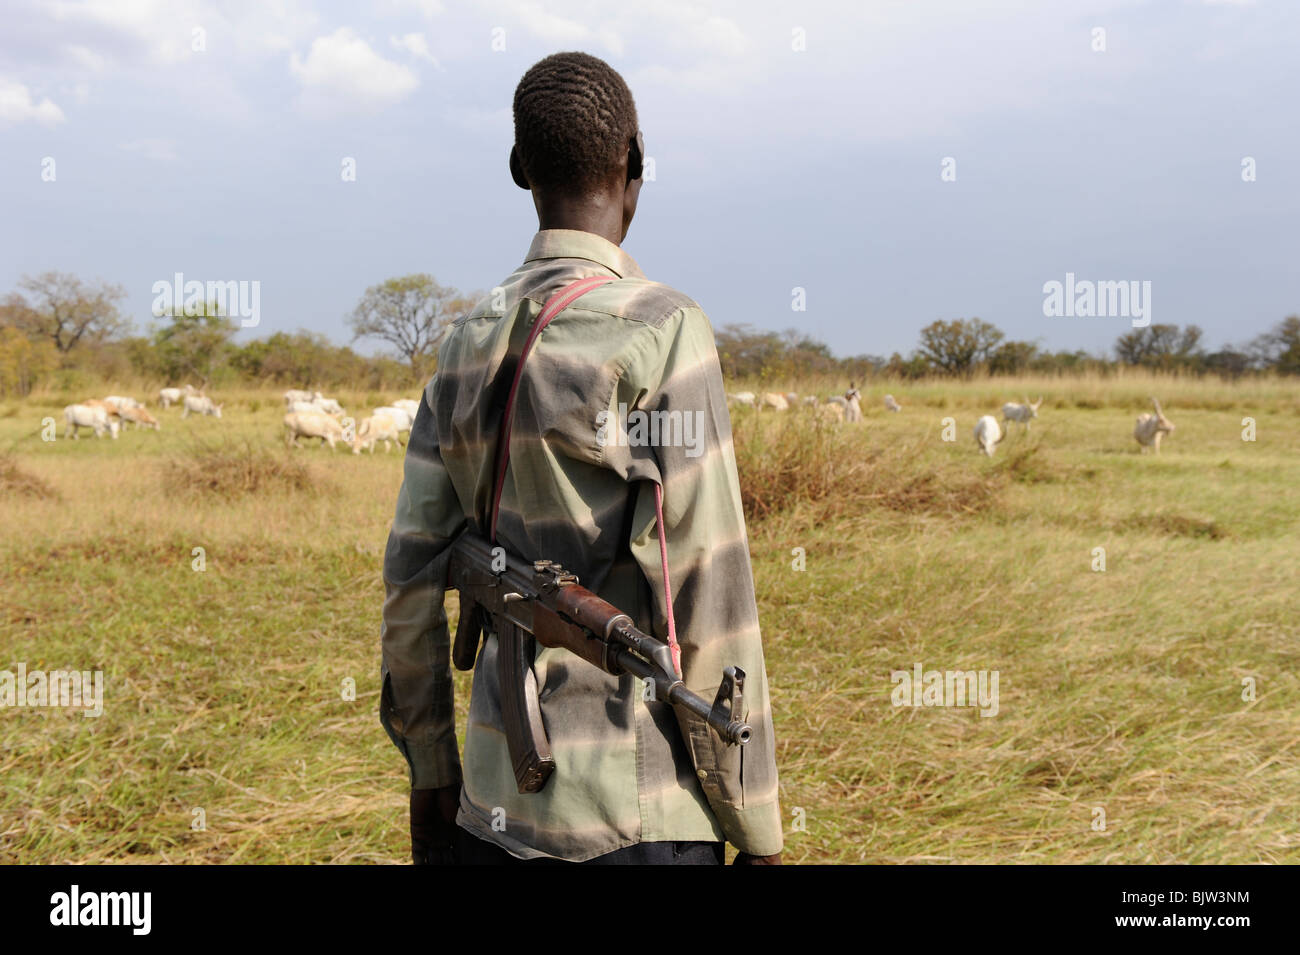 Au sud-Soudan, Cuibet près de Rumbek , tribu Dinka, Shepherd armés de Kalachnikov AK-47 protéger leurs vaches zébu bovins hostile de raider Banque D'Images